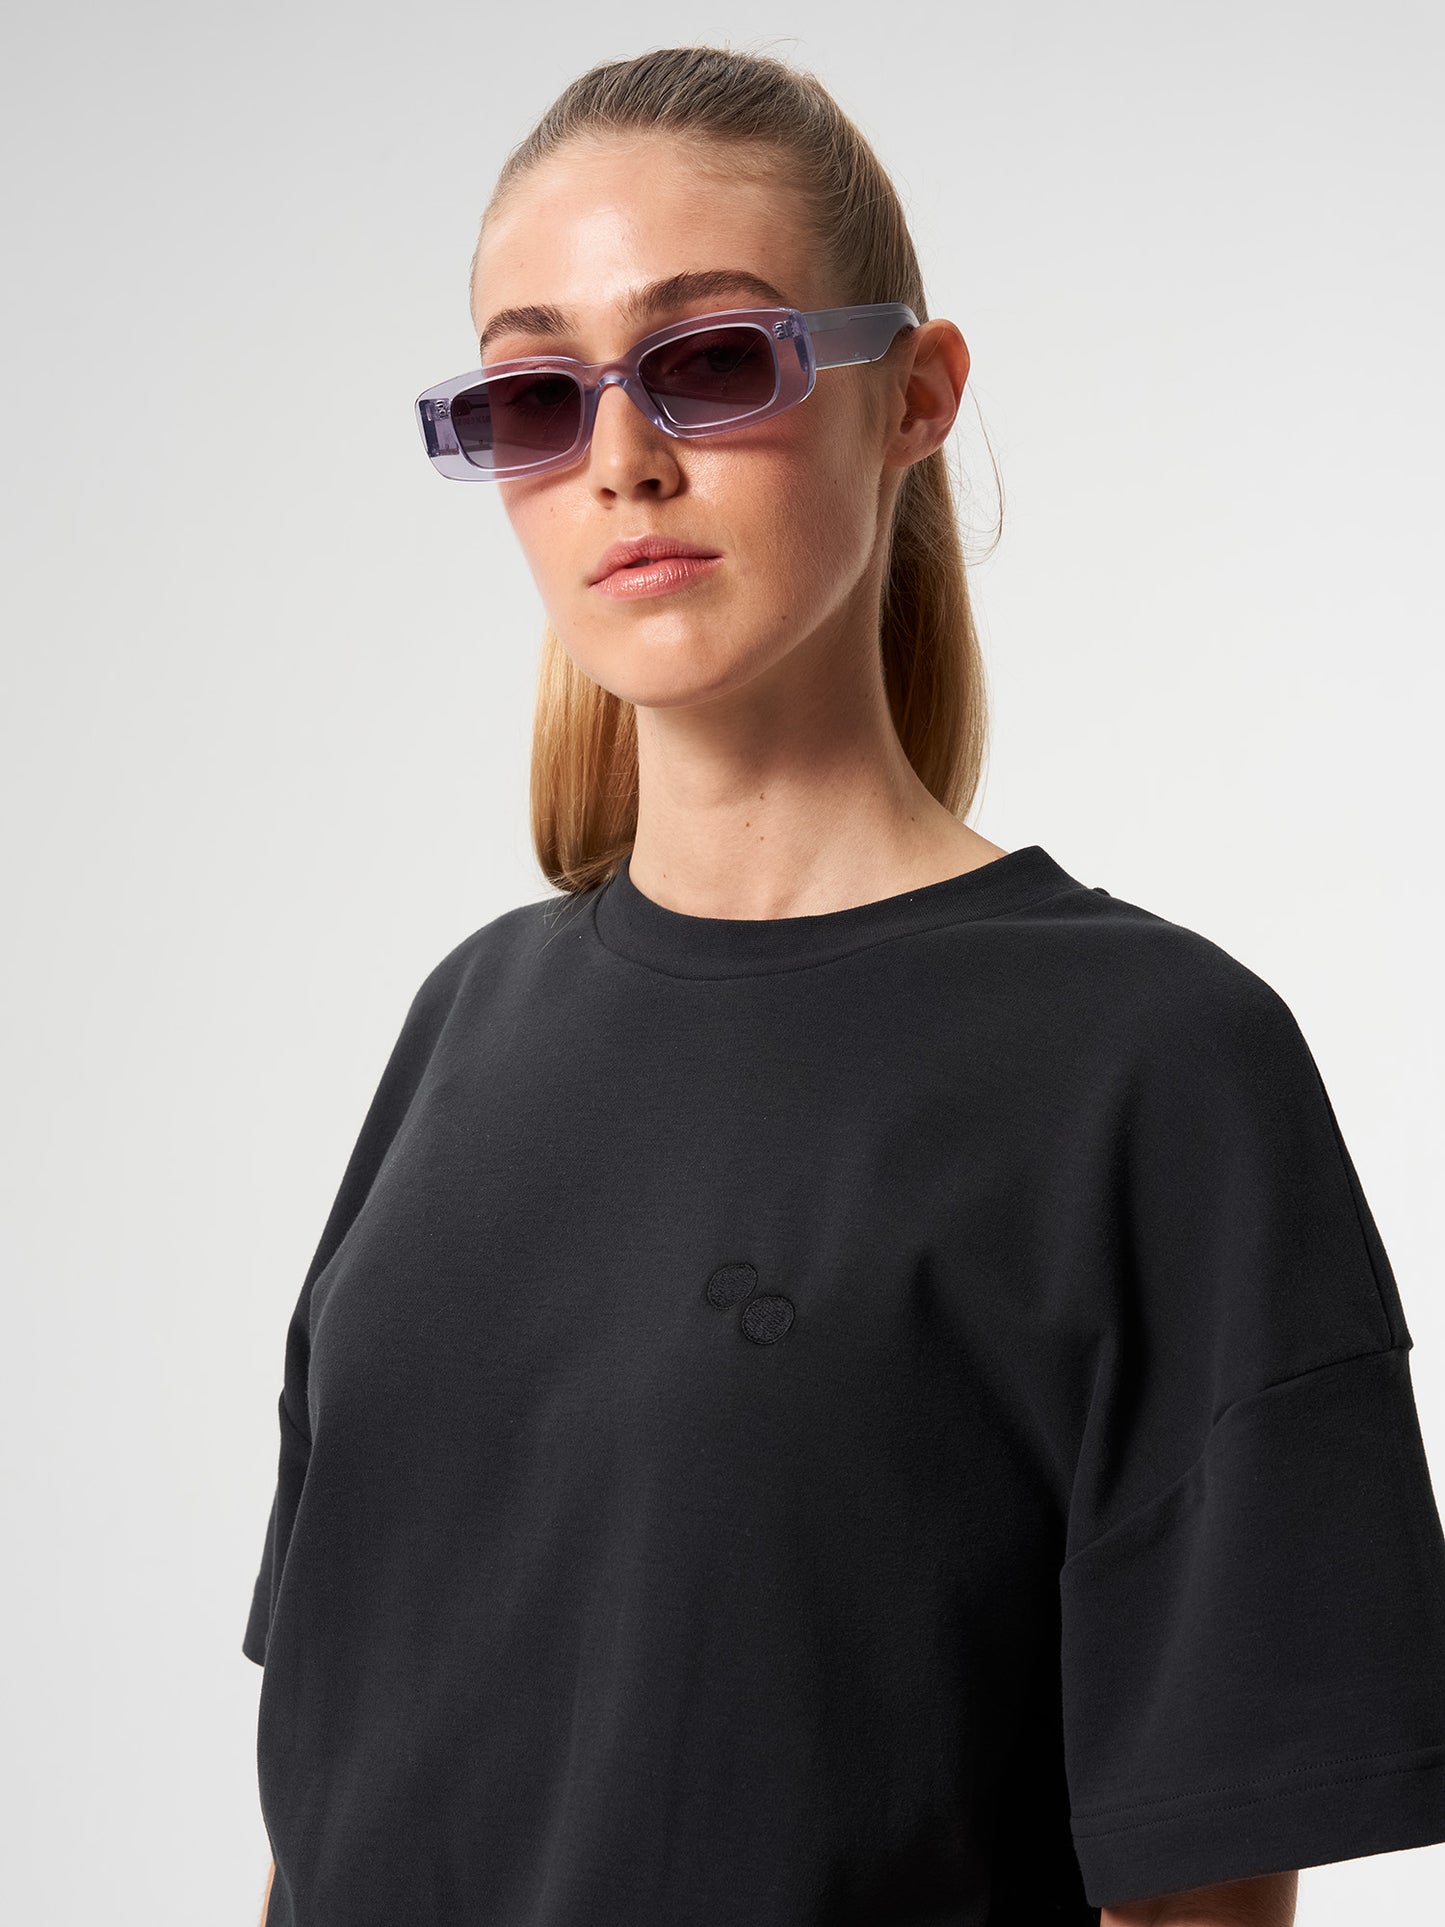 pinqponq-Tshirt-Unisex-Circles-Peat-Black-model-closeup-front